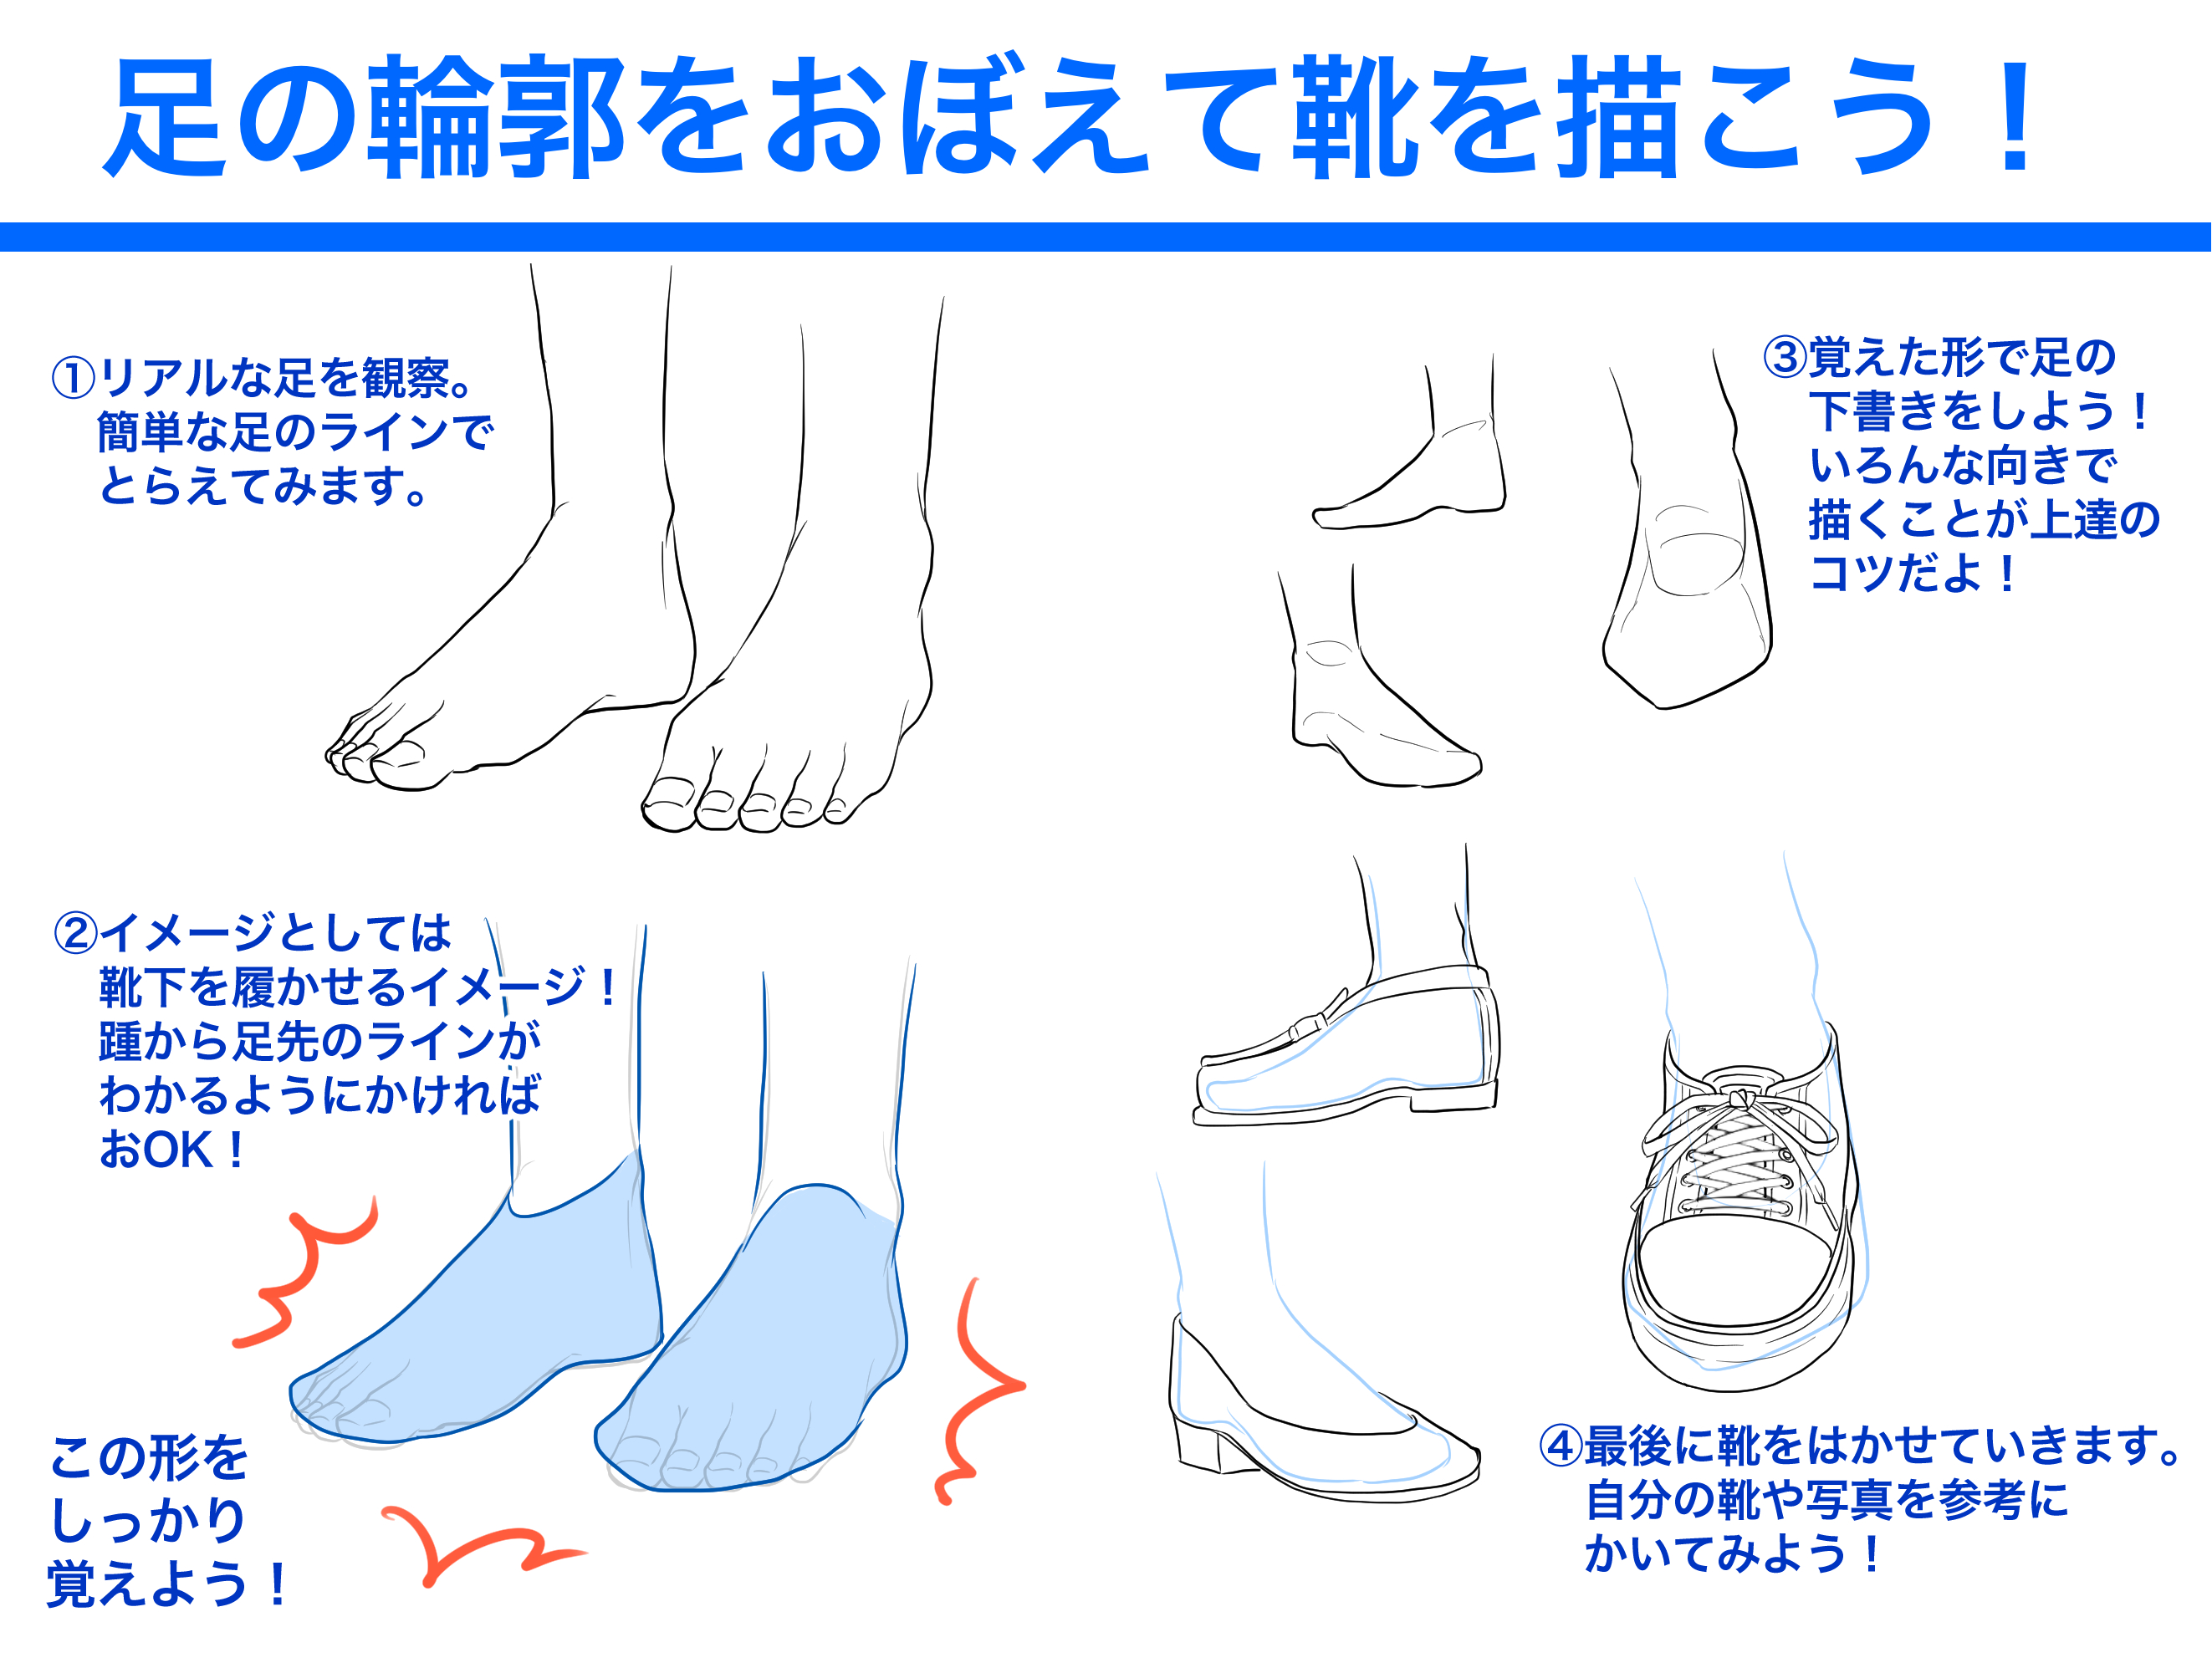 代々木アニメーション学院 東京校 池袋校 No Twitter イラスト科 いつでもどこでも難しい足の描き方 そんなあなたに 役に立つ足の描き方を伝授します 簡単な形でとにかくとらえることが実は上達の道 描けたらオープンキャンパスに見せに来てね 代アニ Yoani